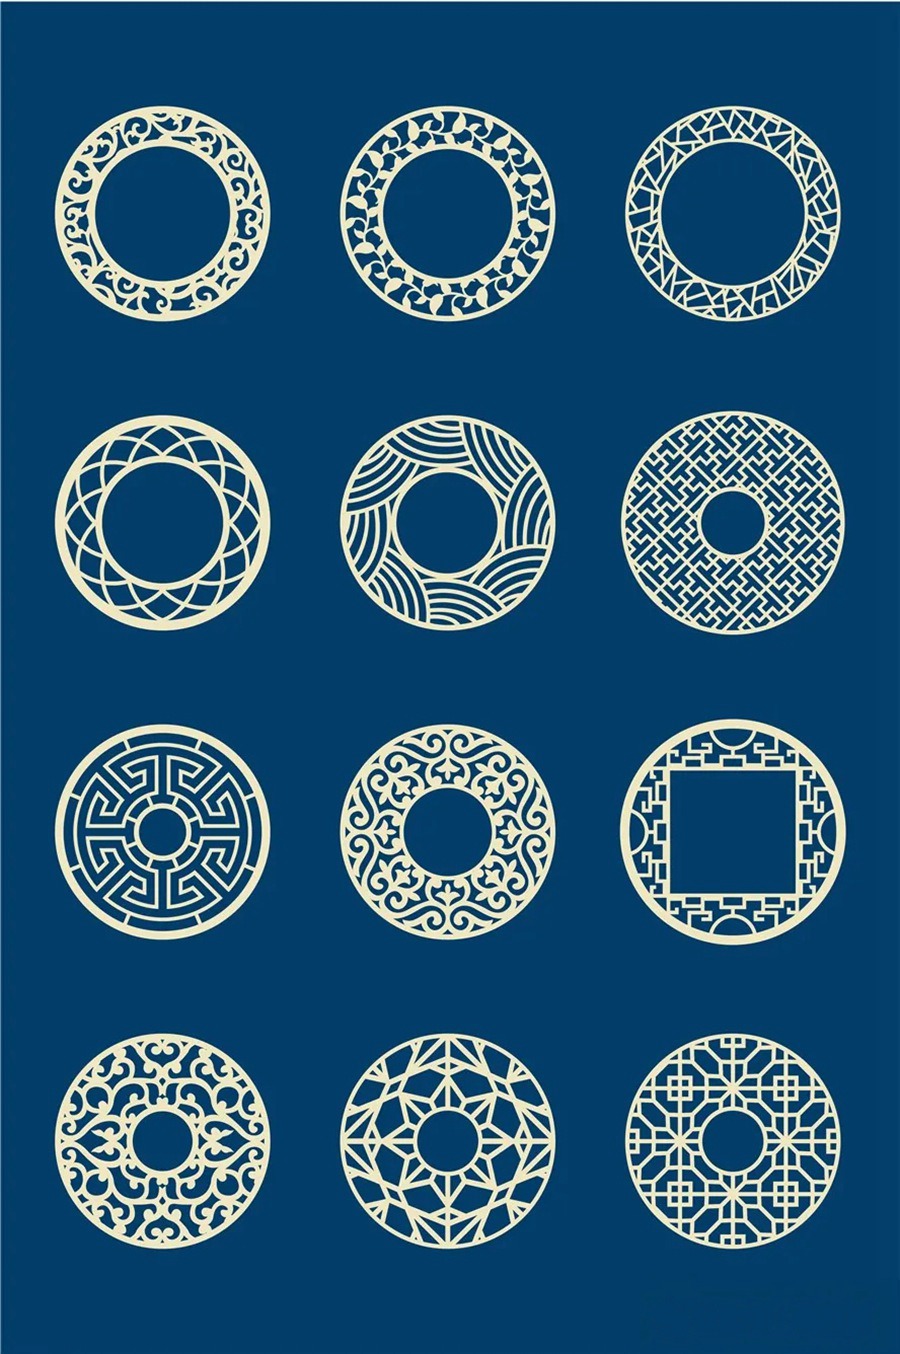 中国风传统古典青花瓷图案花纹图形纹样AI矢量模板花纹设计素材 图片素材 第7张